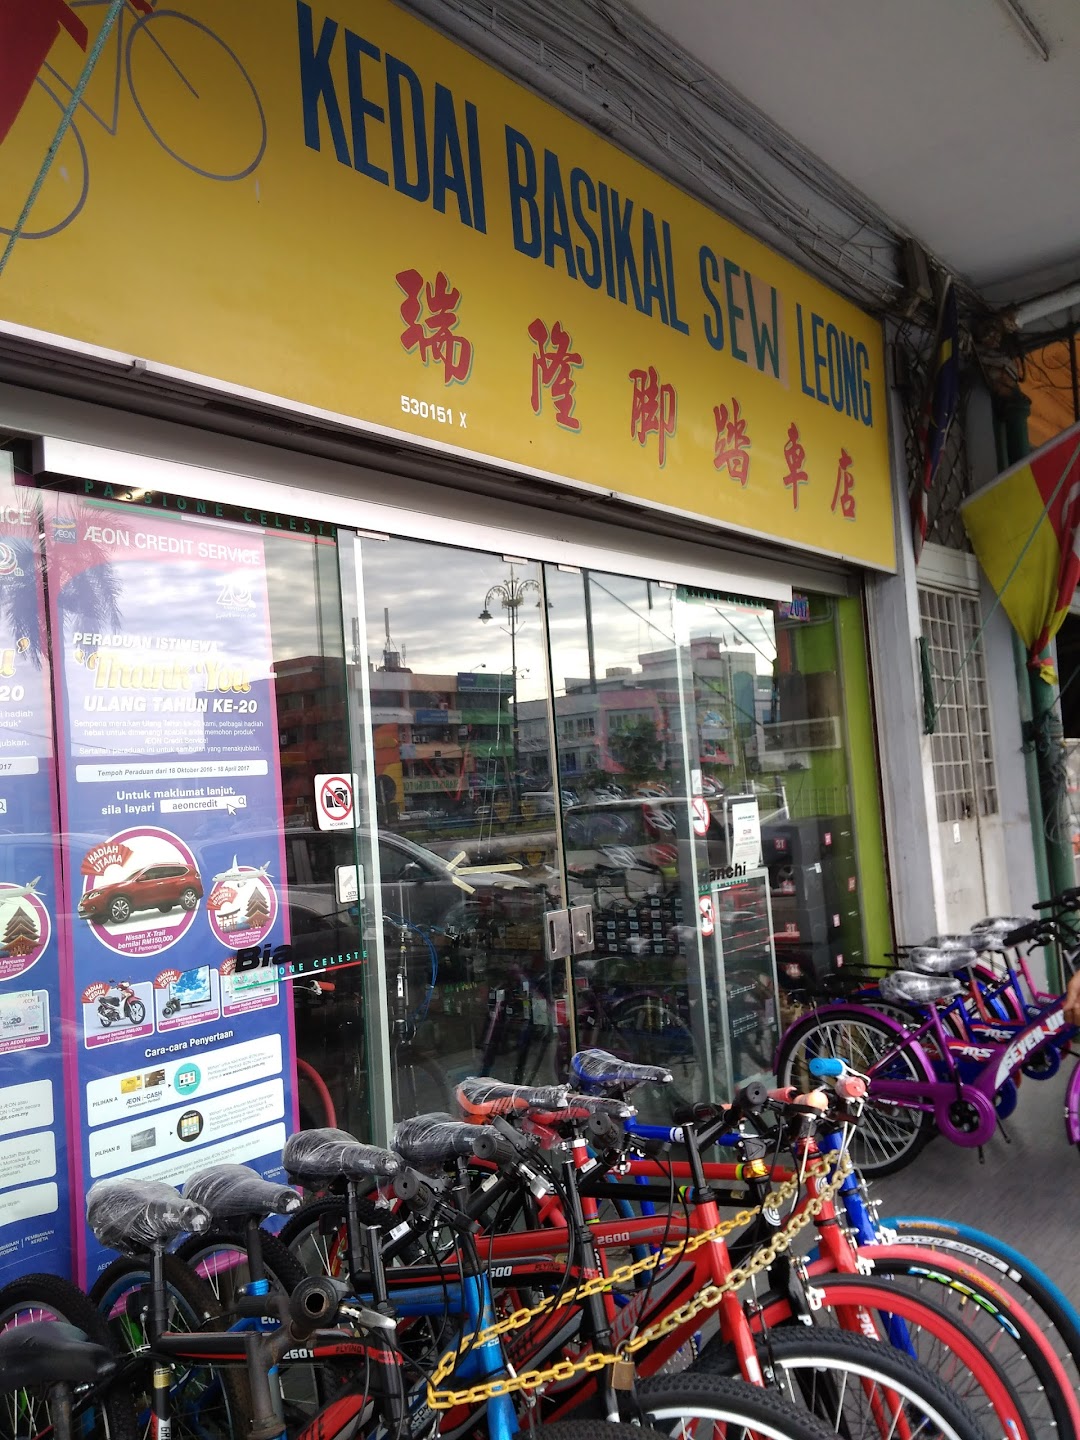 Kedai Basikal Sew Leong